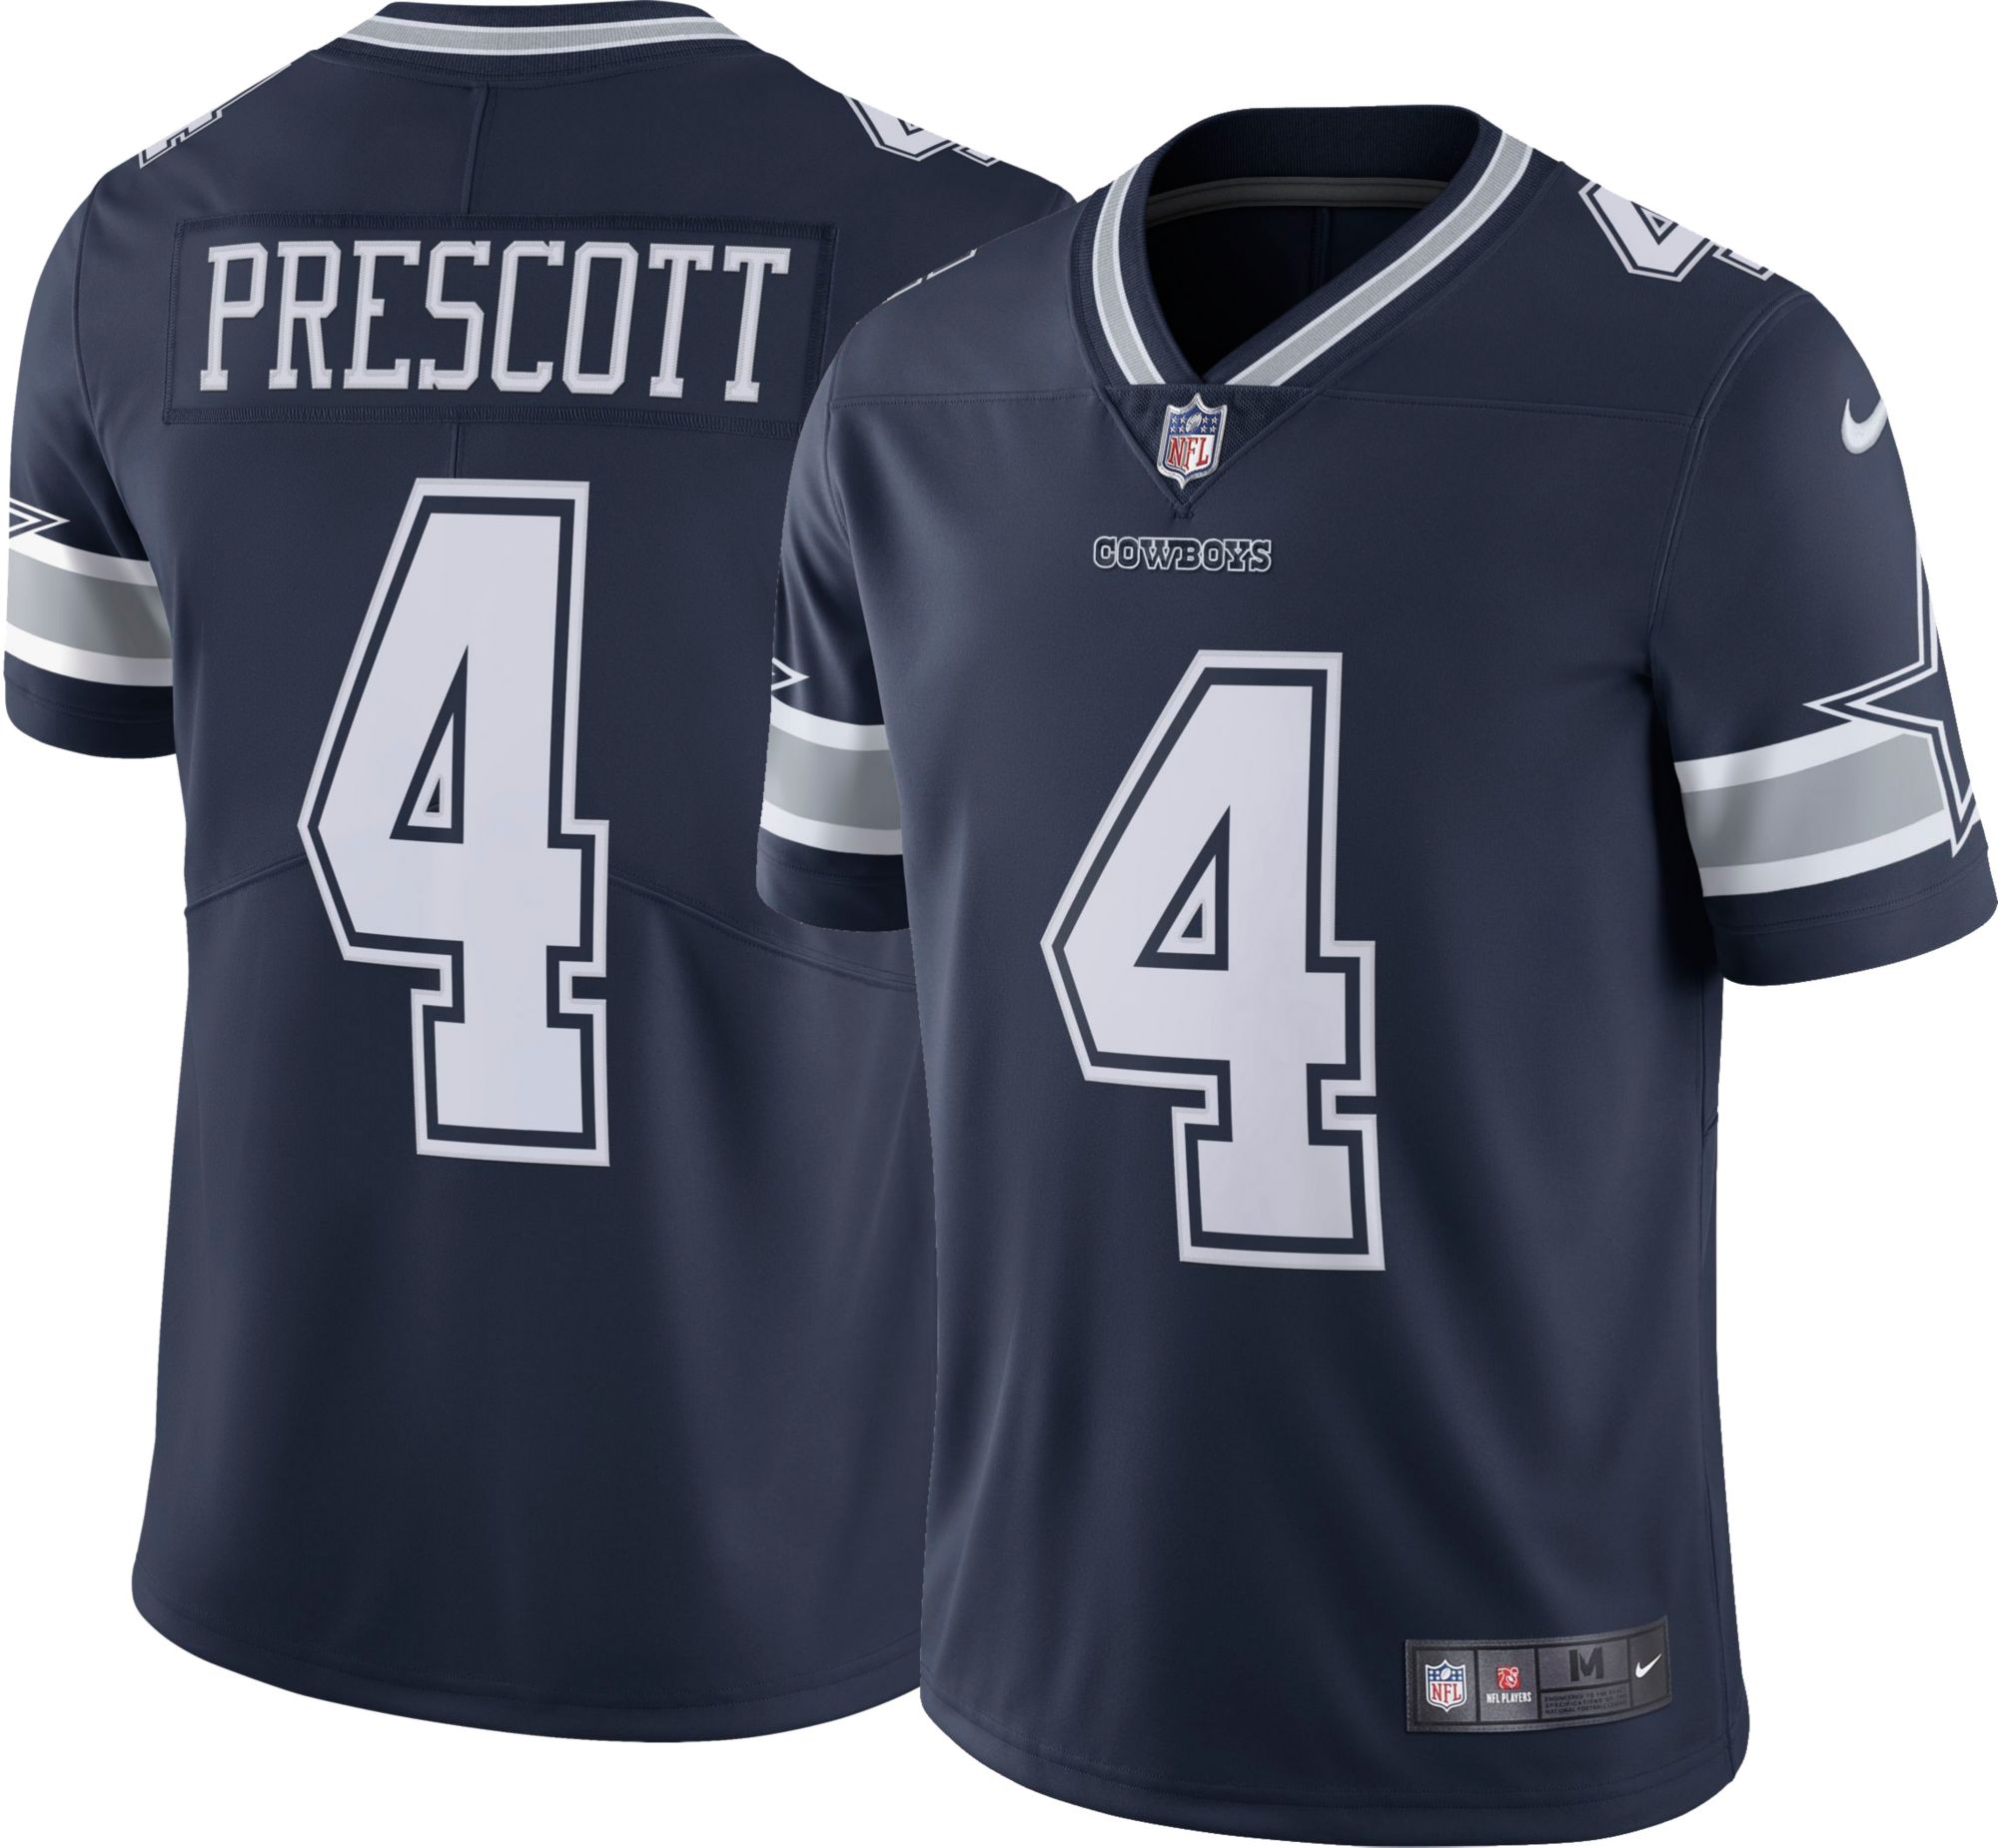 prescott jersey sales